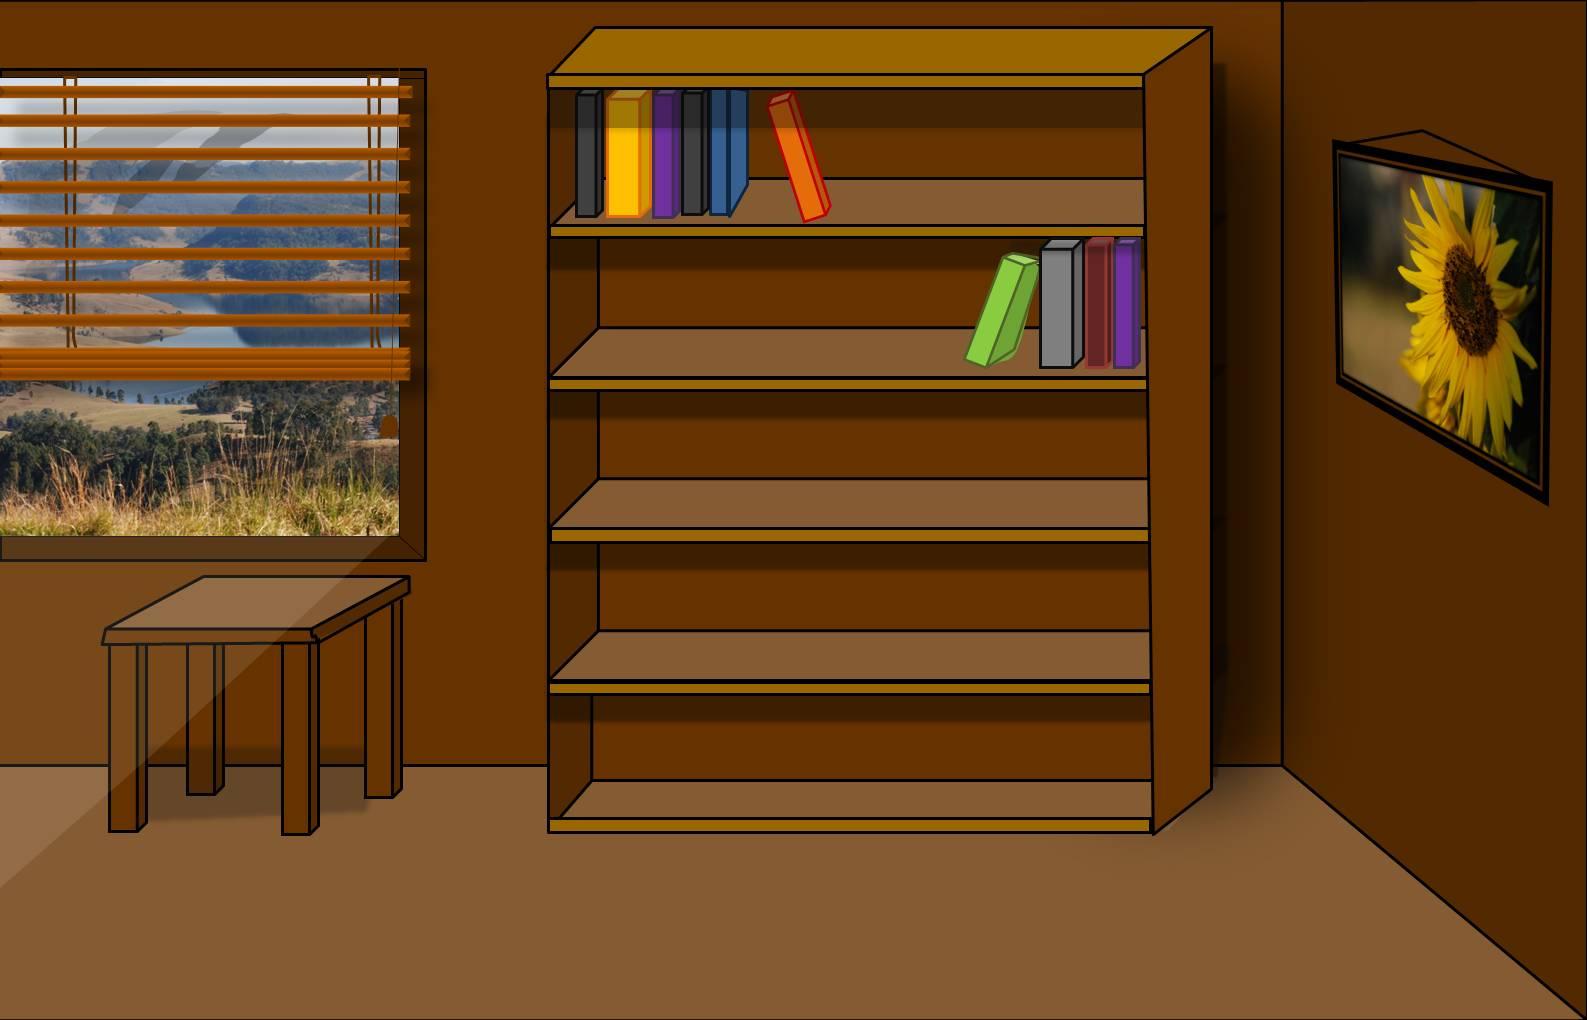 Những tấm nền desktop book shelf độc đáo sẽ giúp bạn trang trí không gian làm việc của mình nhiều màu sắc hơn. Cùng tham khảo để tìm kiếm những gợi ý thích hợp cho phong cách riêng của bạn.